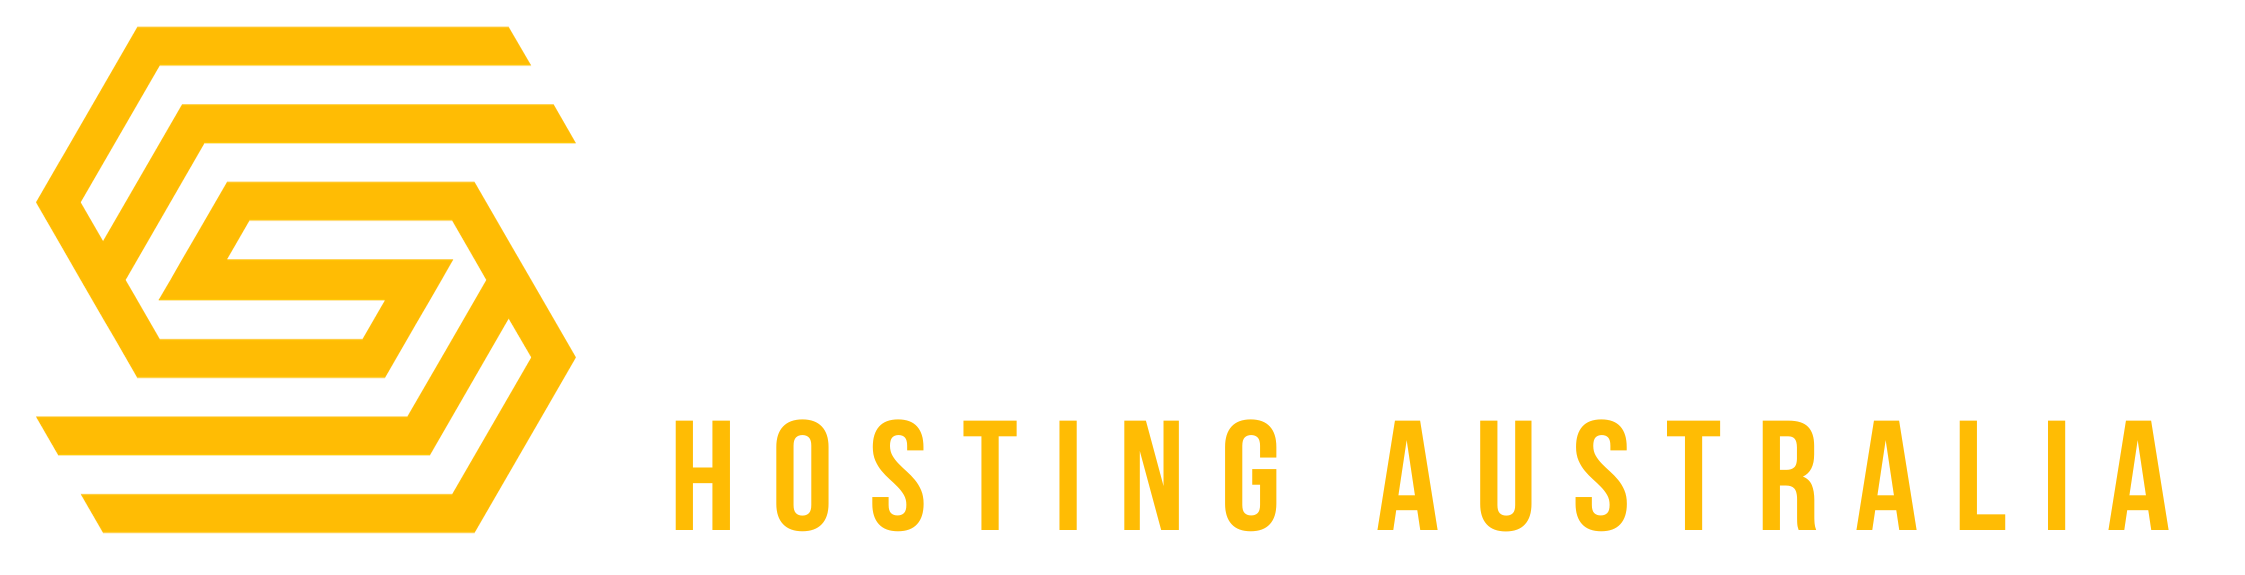 Seedbed Hosting Australia